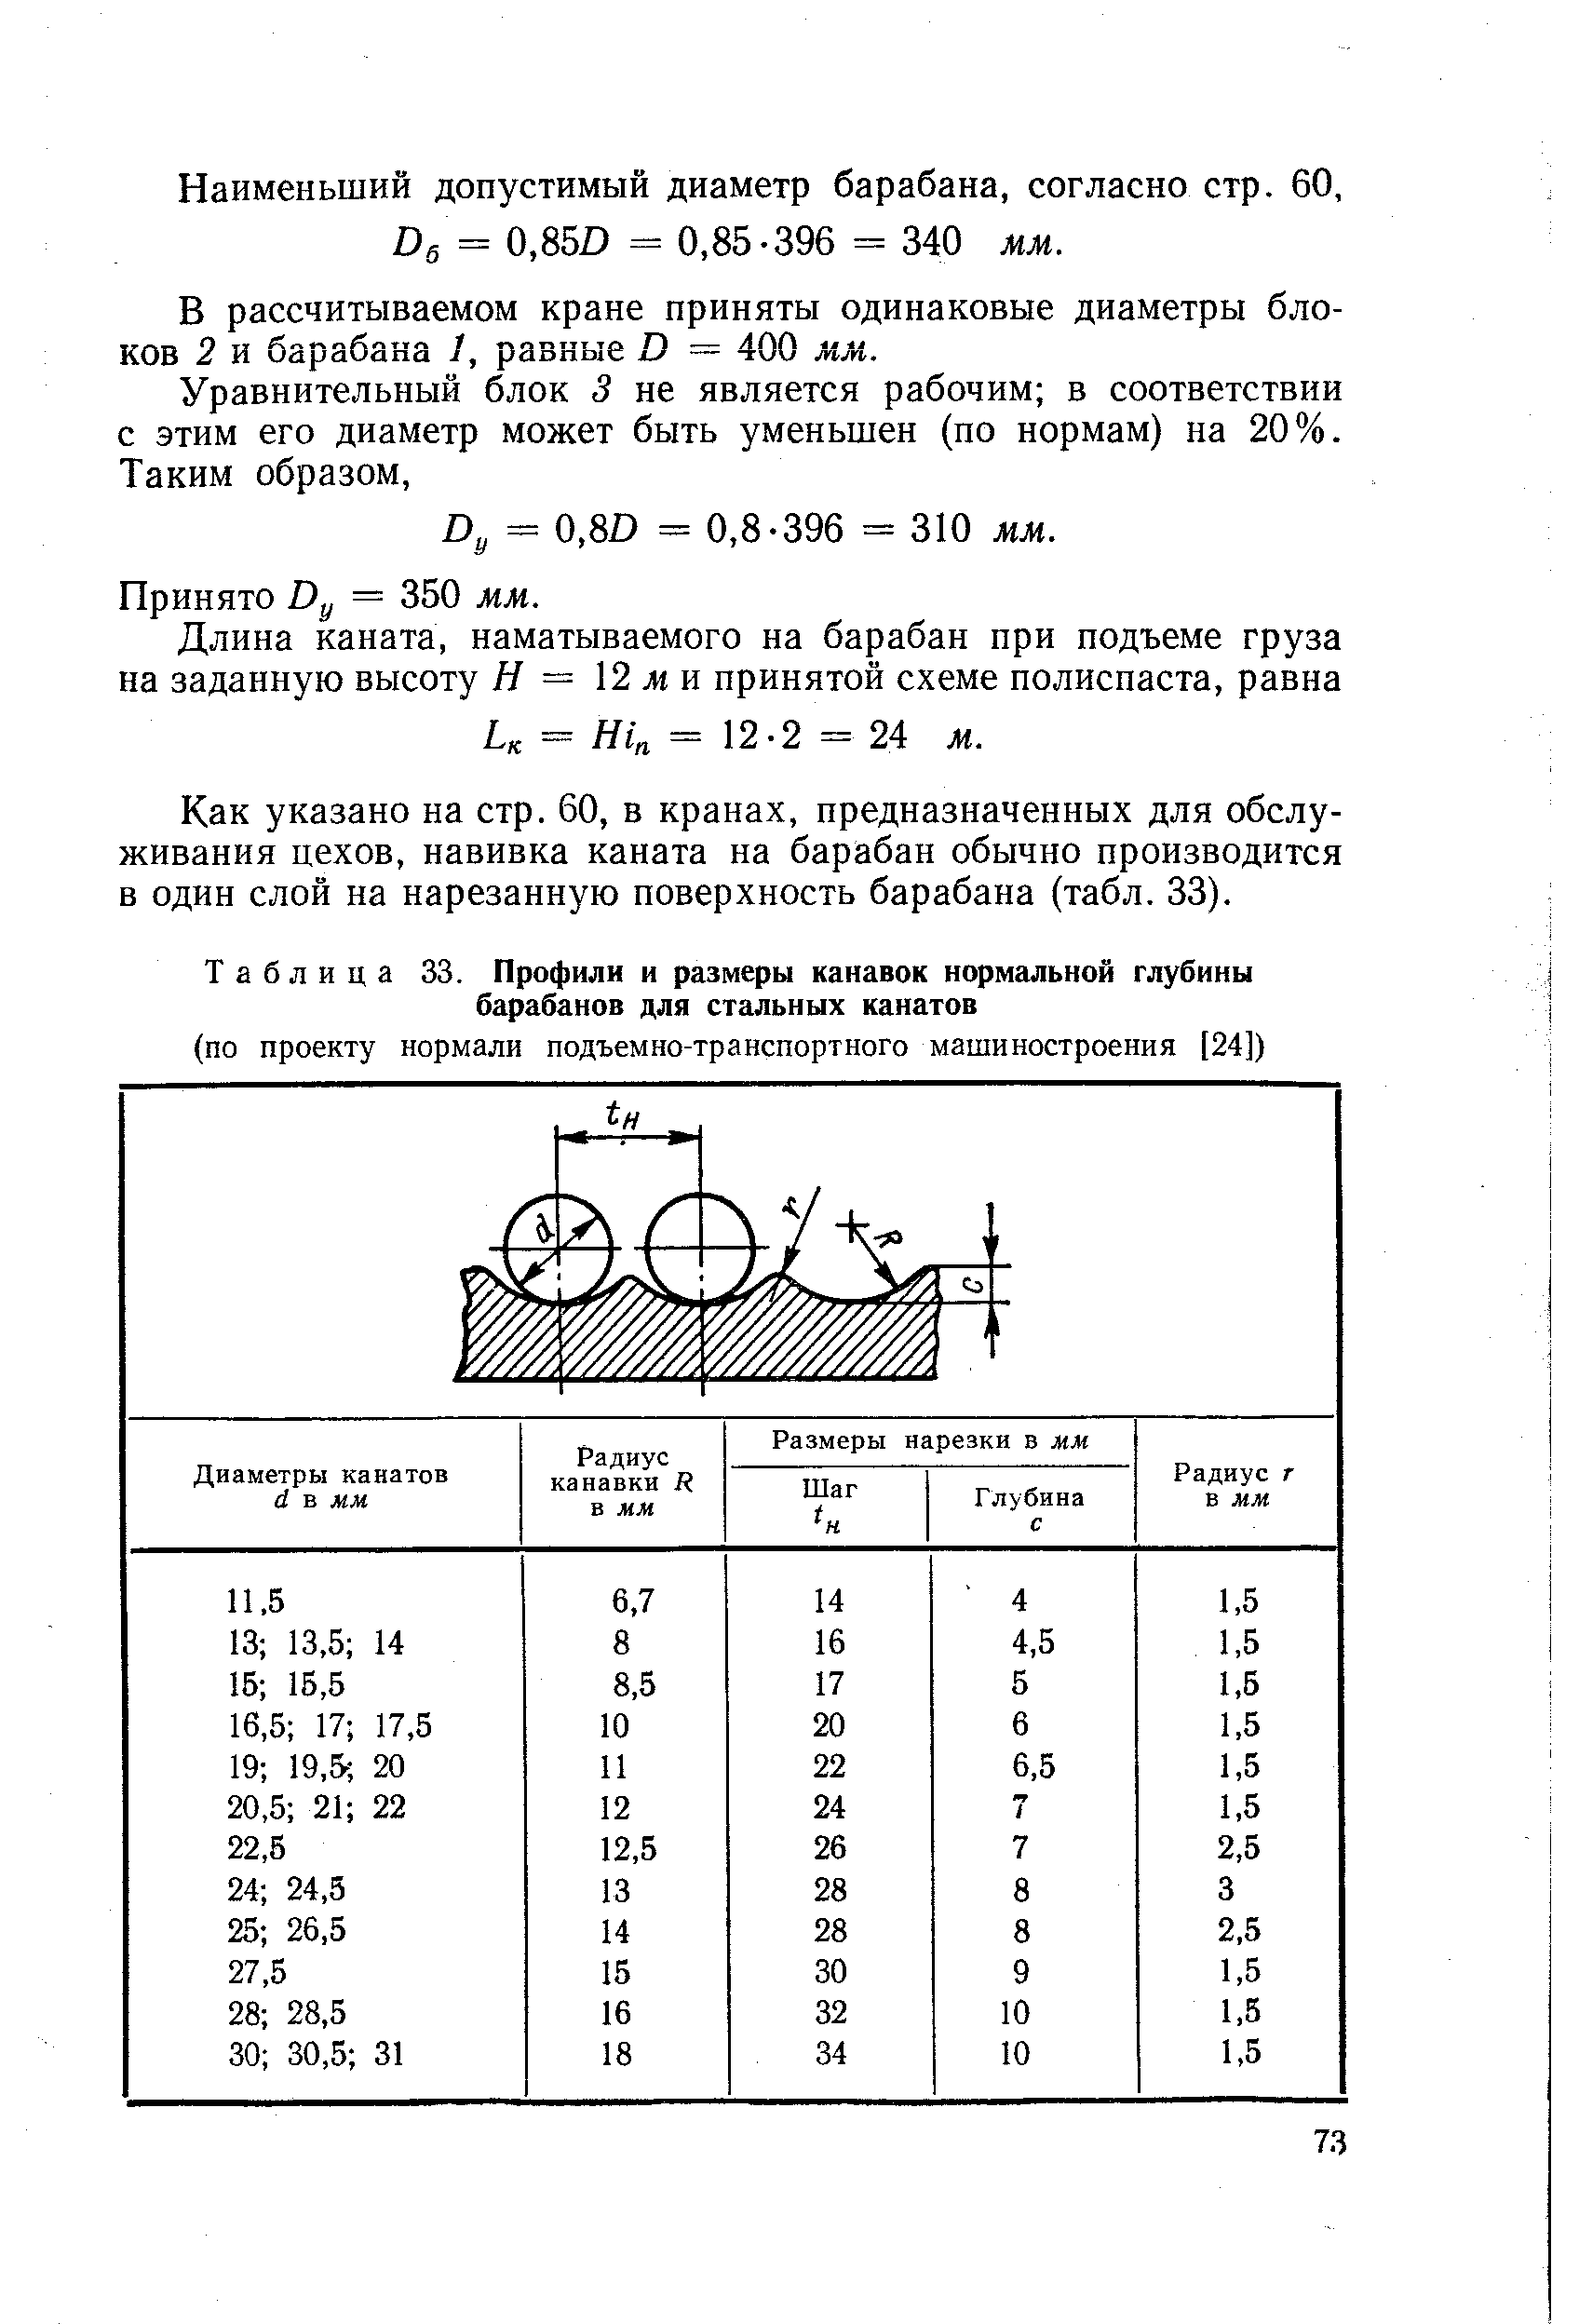 Таблица 33. Профили и размеры канавок <a href="/info/25856">нормальной глубины</a> барабанов для стальных канатов
